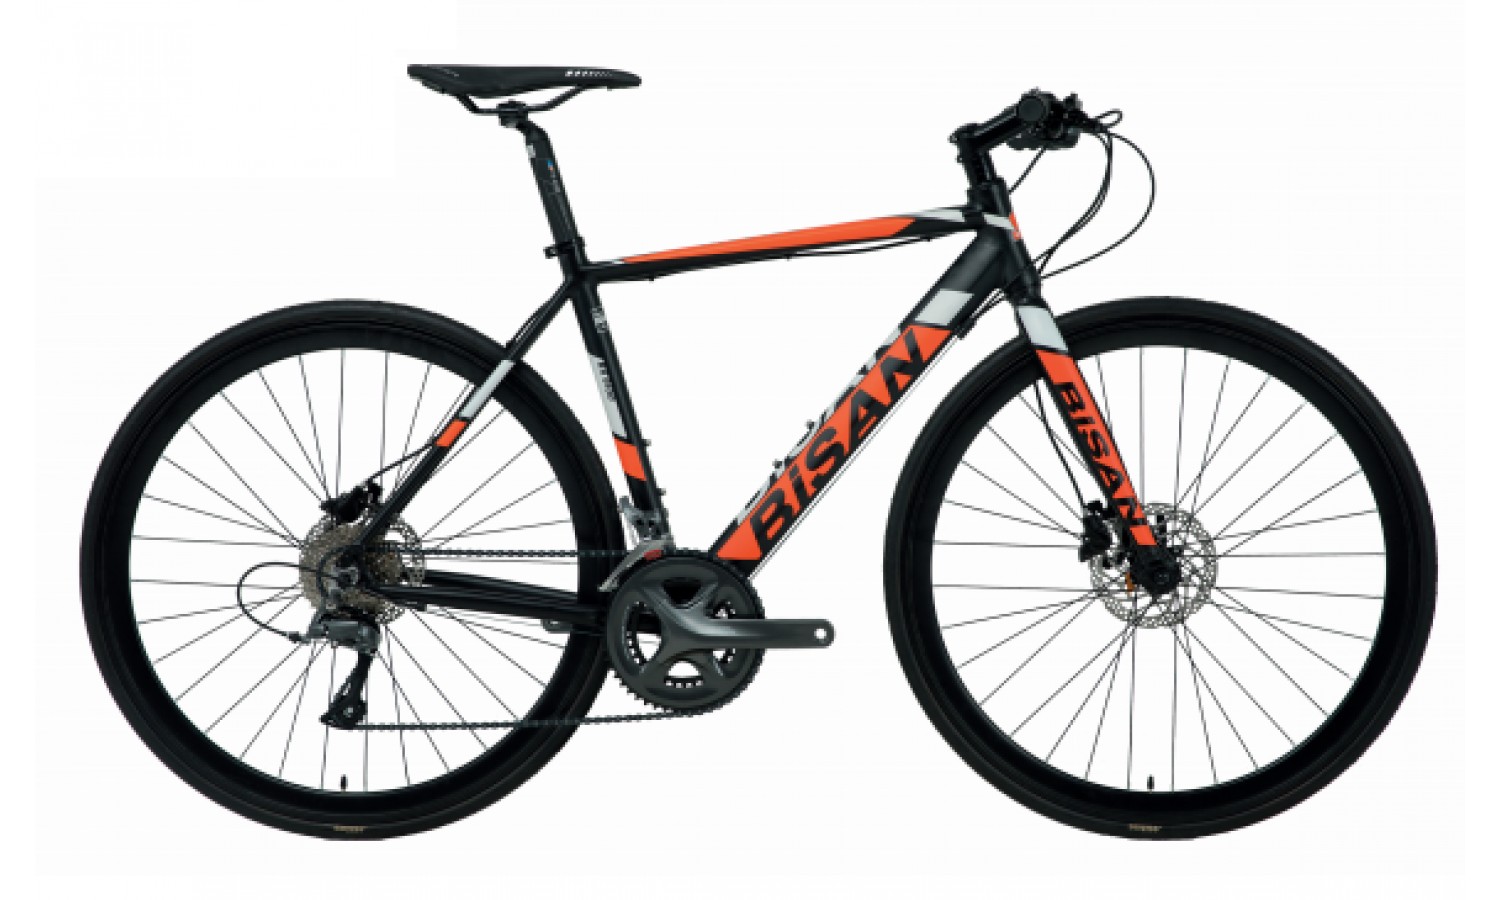 Bisan Rx 9100 Fitness 28 Hd Yarış Bisikleti Claris (Siyah Sarı)